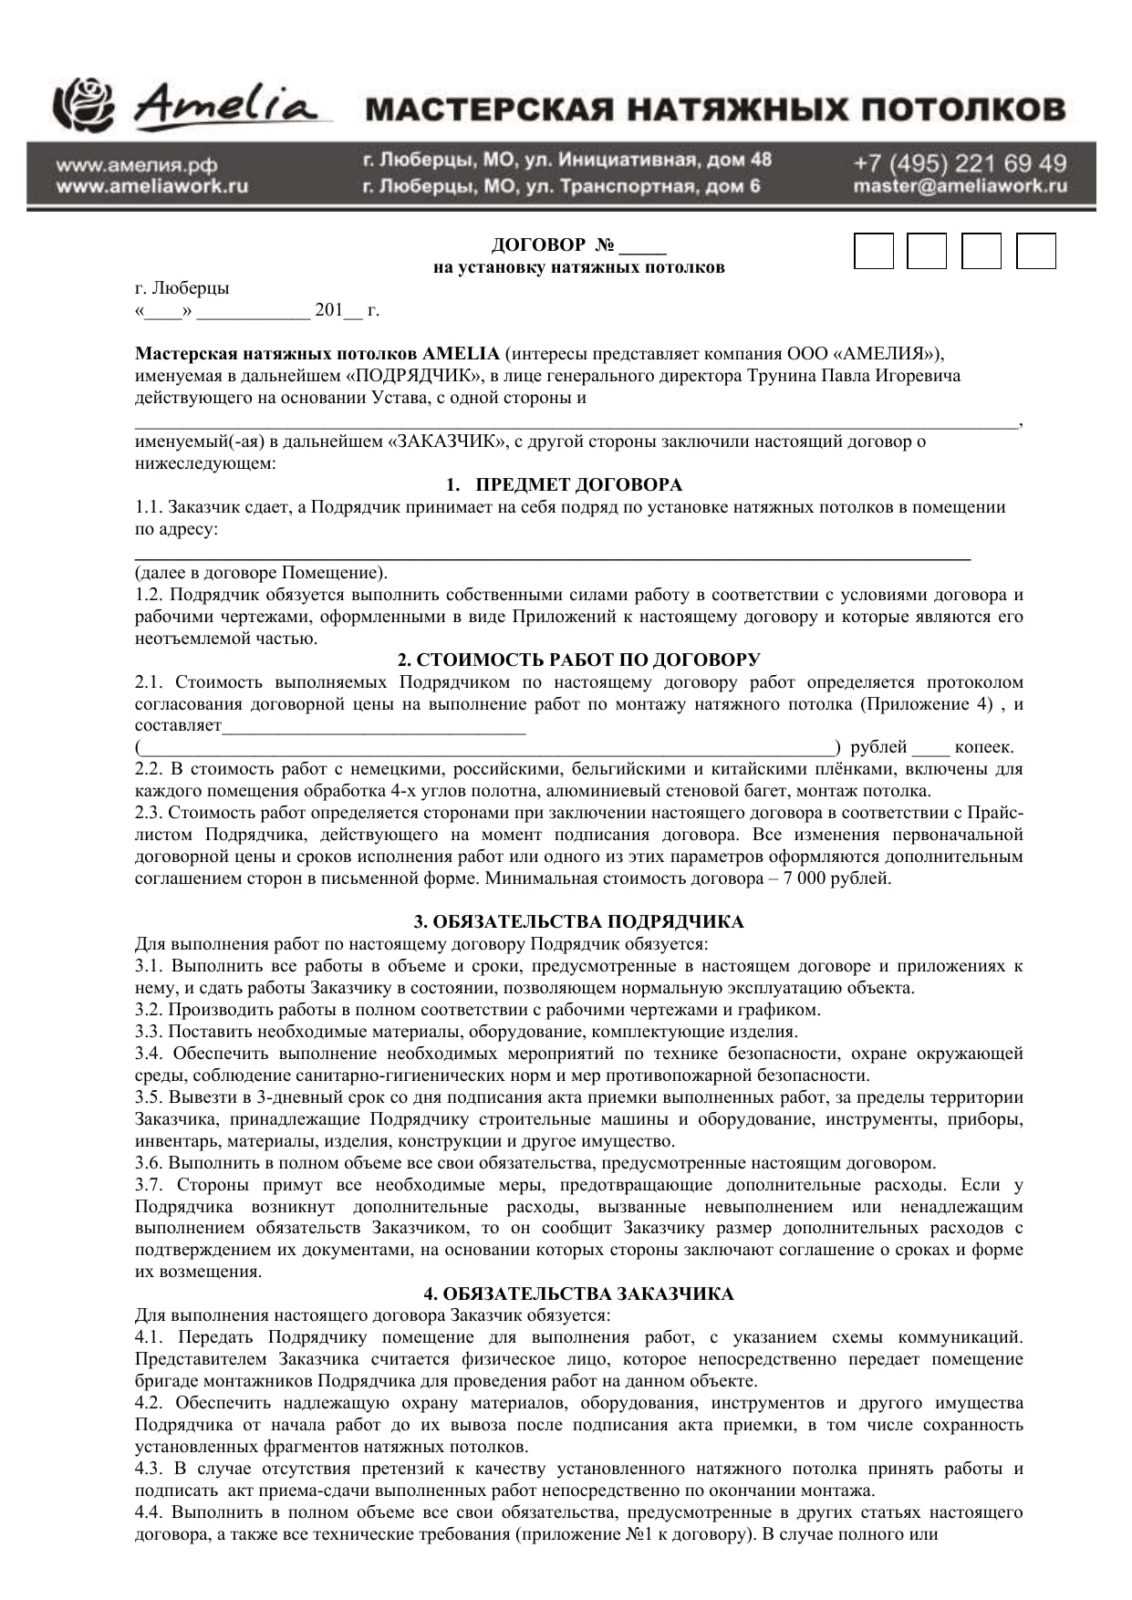 Договор на изготовление и поставку натяжного потолка | контент-платформа pandia.ru